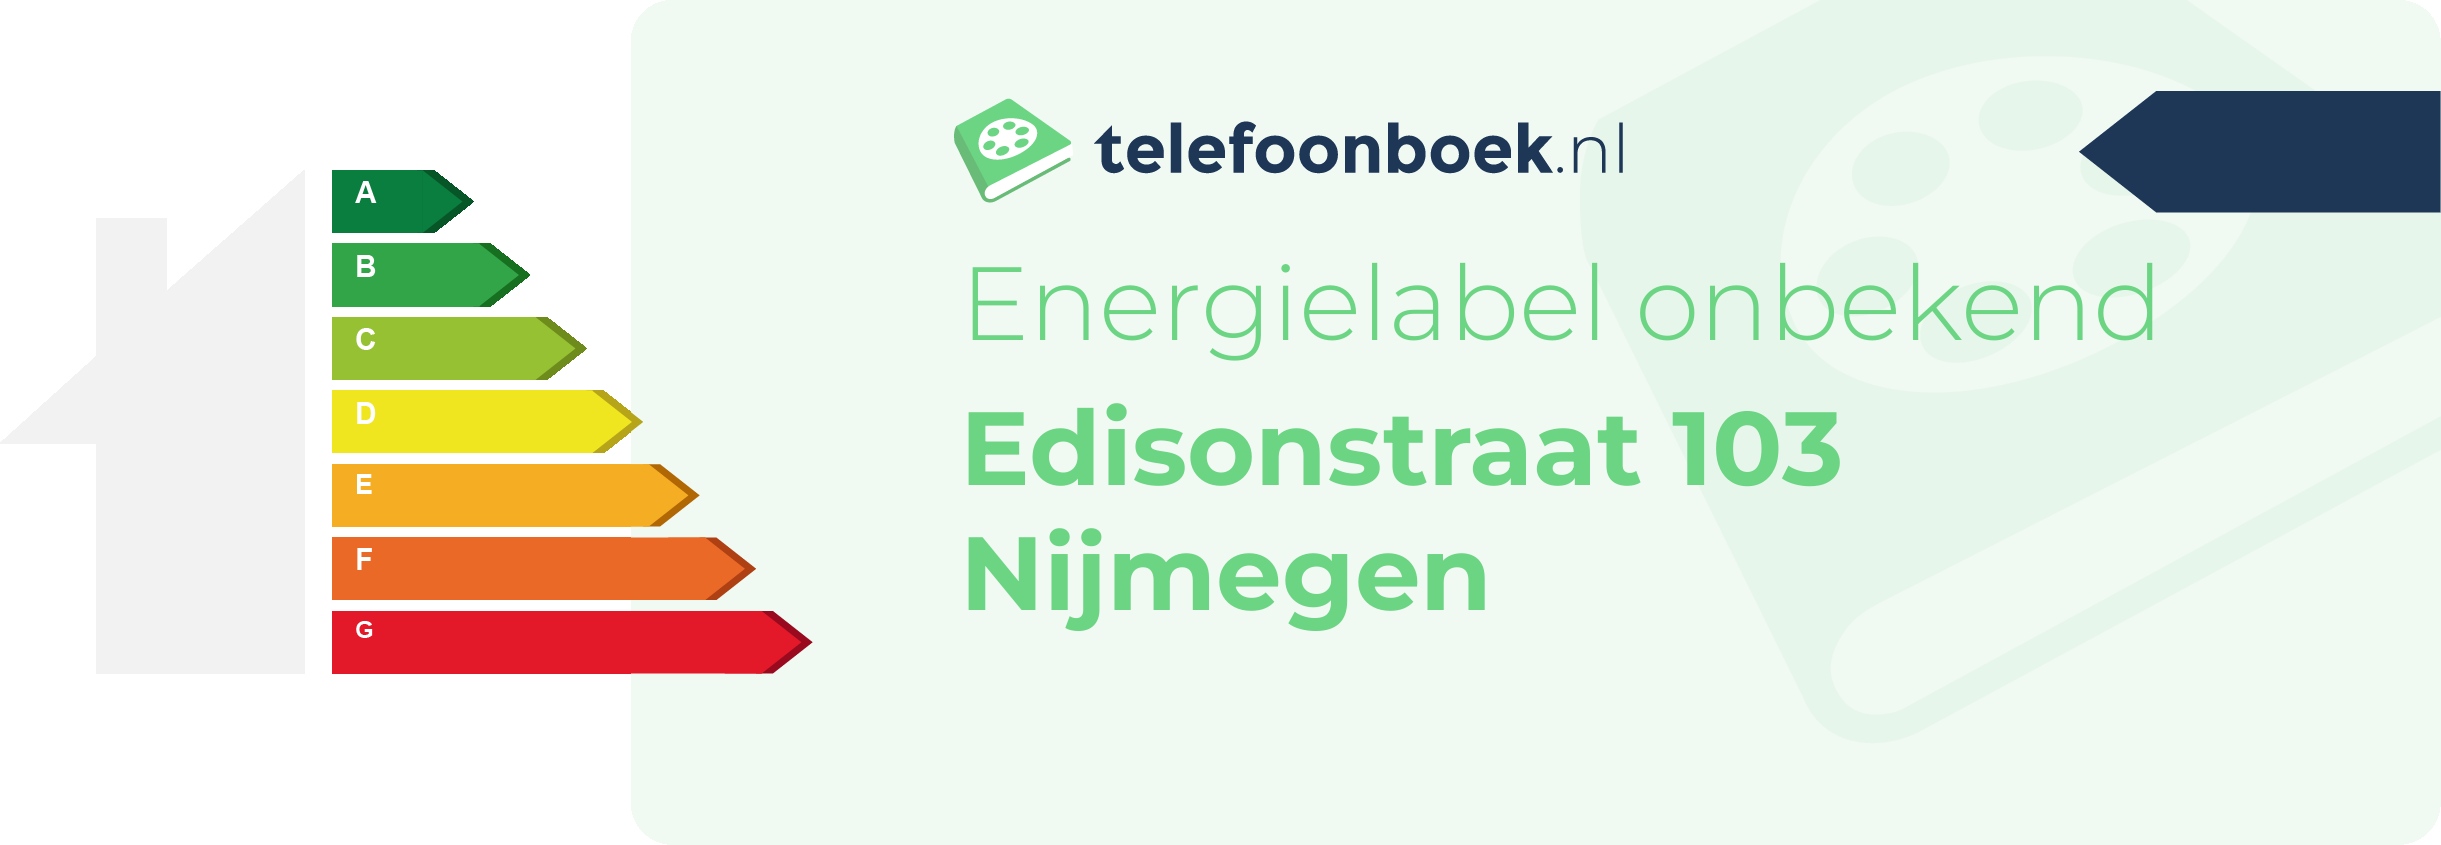 Energielabel Edisonstraat 103 Nijmegen